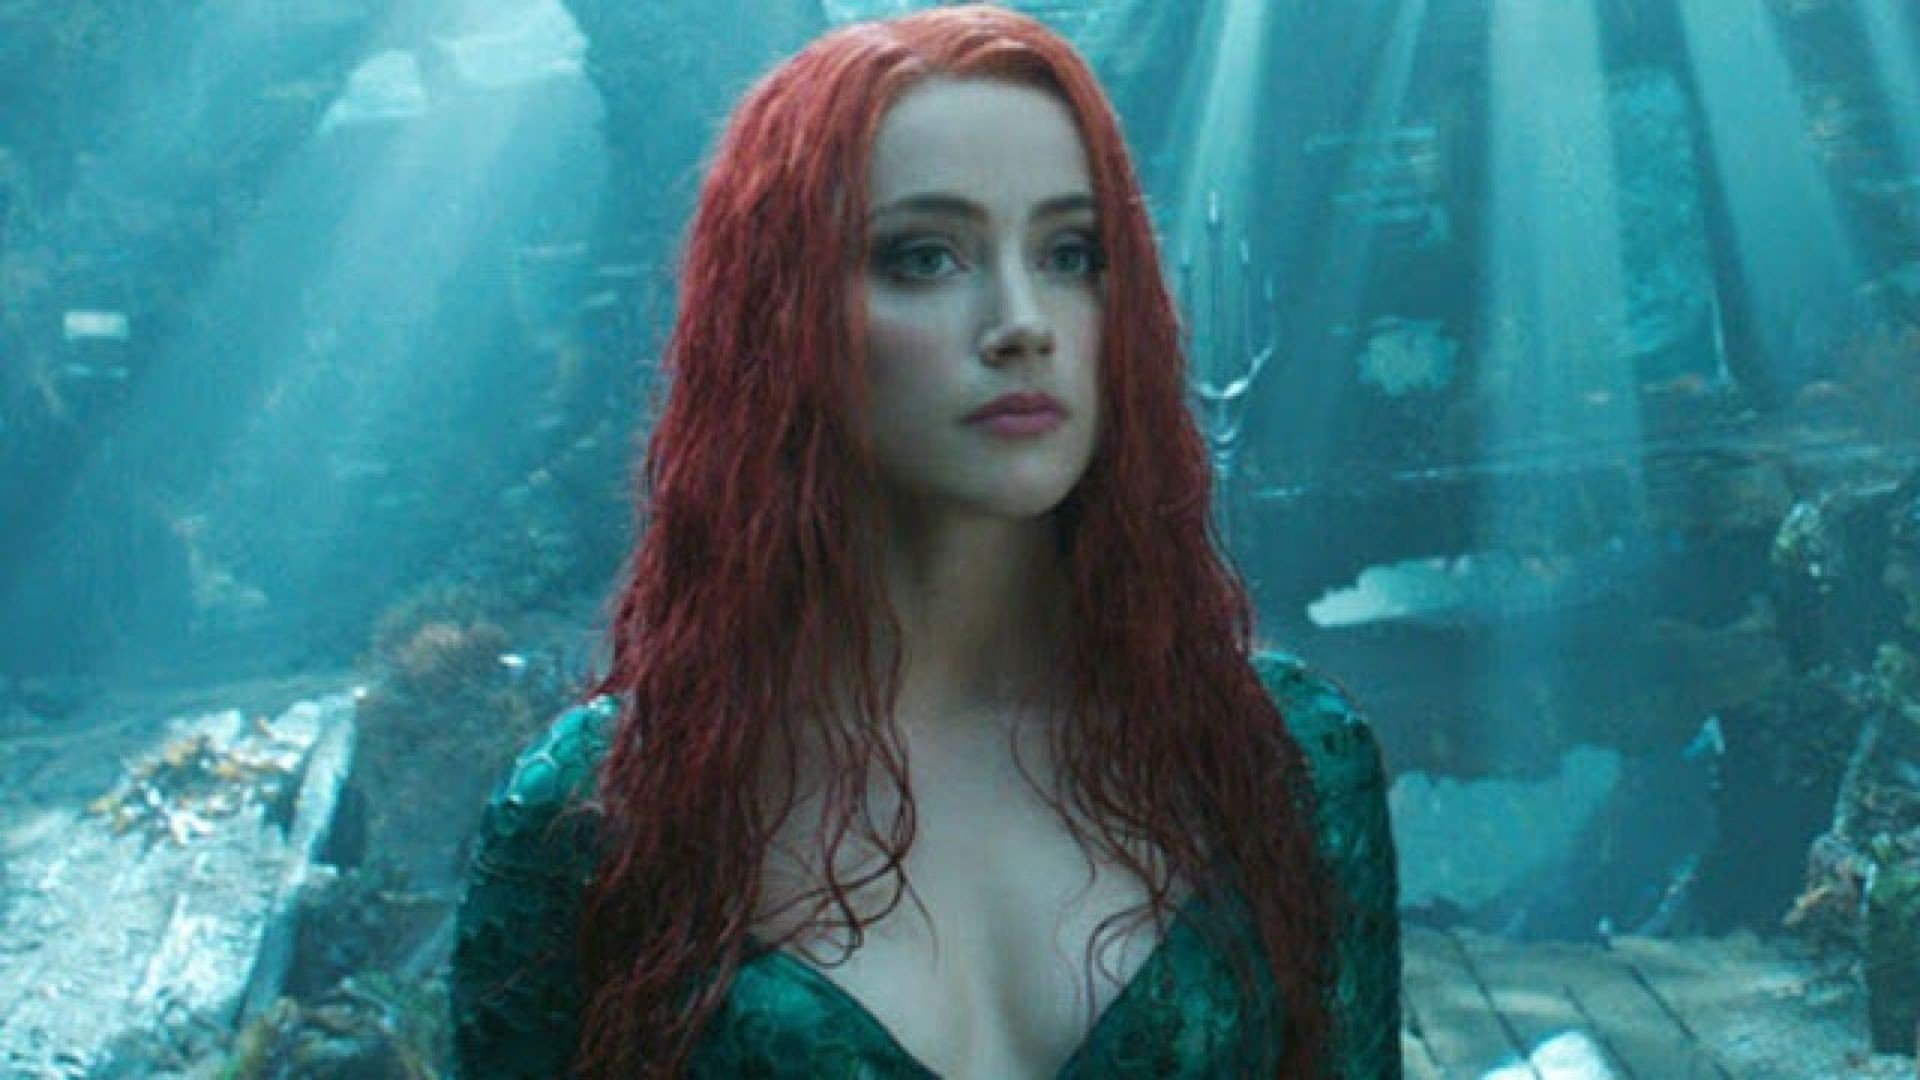 Amber Heard confessa que precisou lutar por papel em Aquaman 2 após  disputa judicial contra Johnny Depp - Notícias de cinema - AdoroCinema